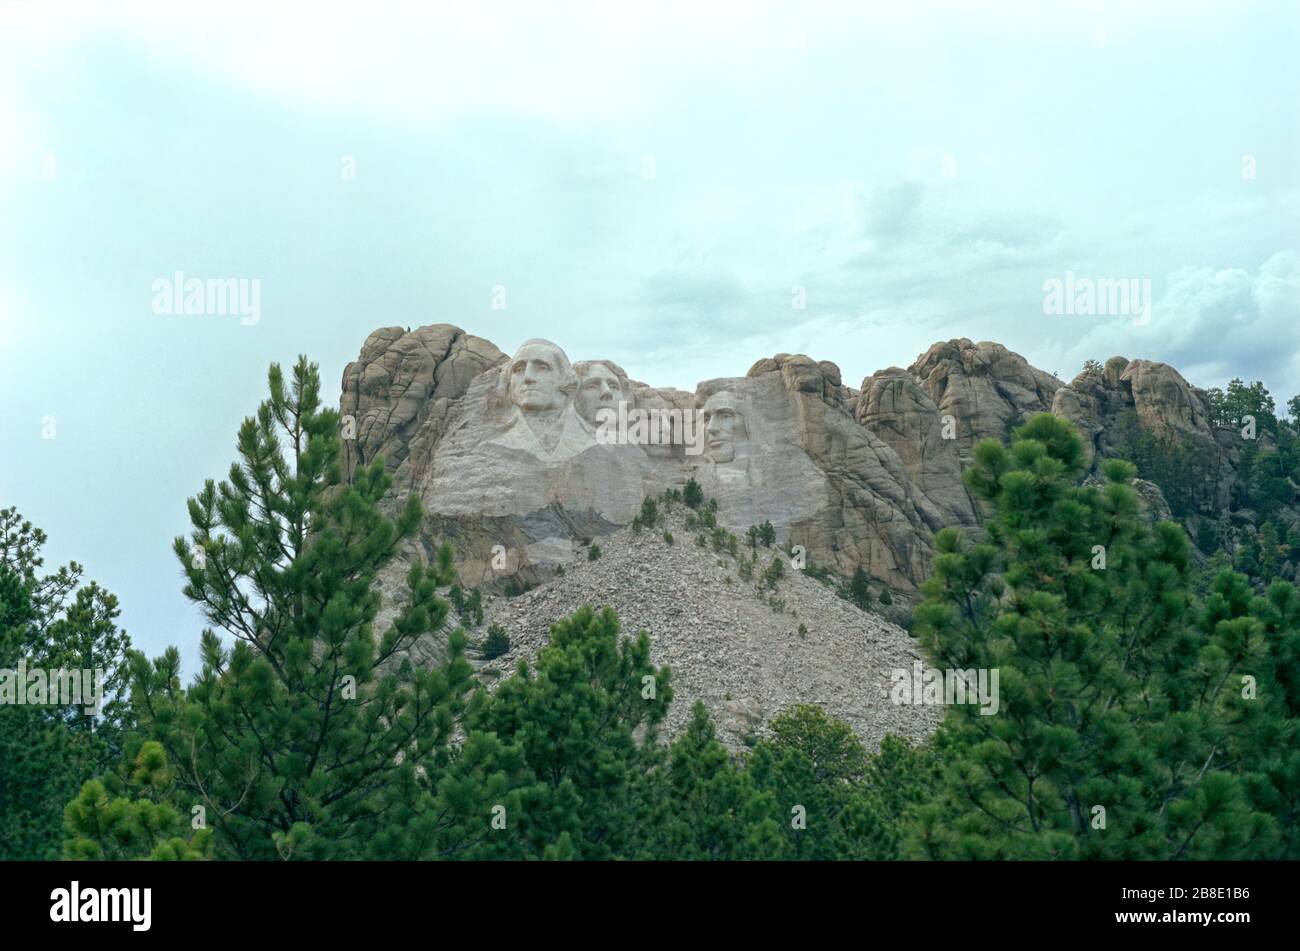 Mémorial national du mont Rushmore dans les années 1980 Banque D'Images